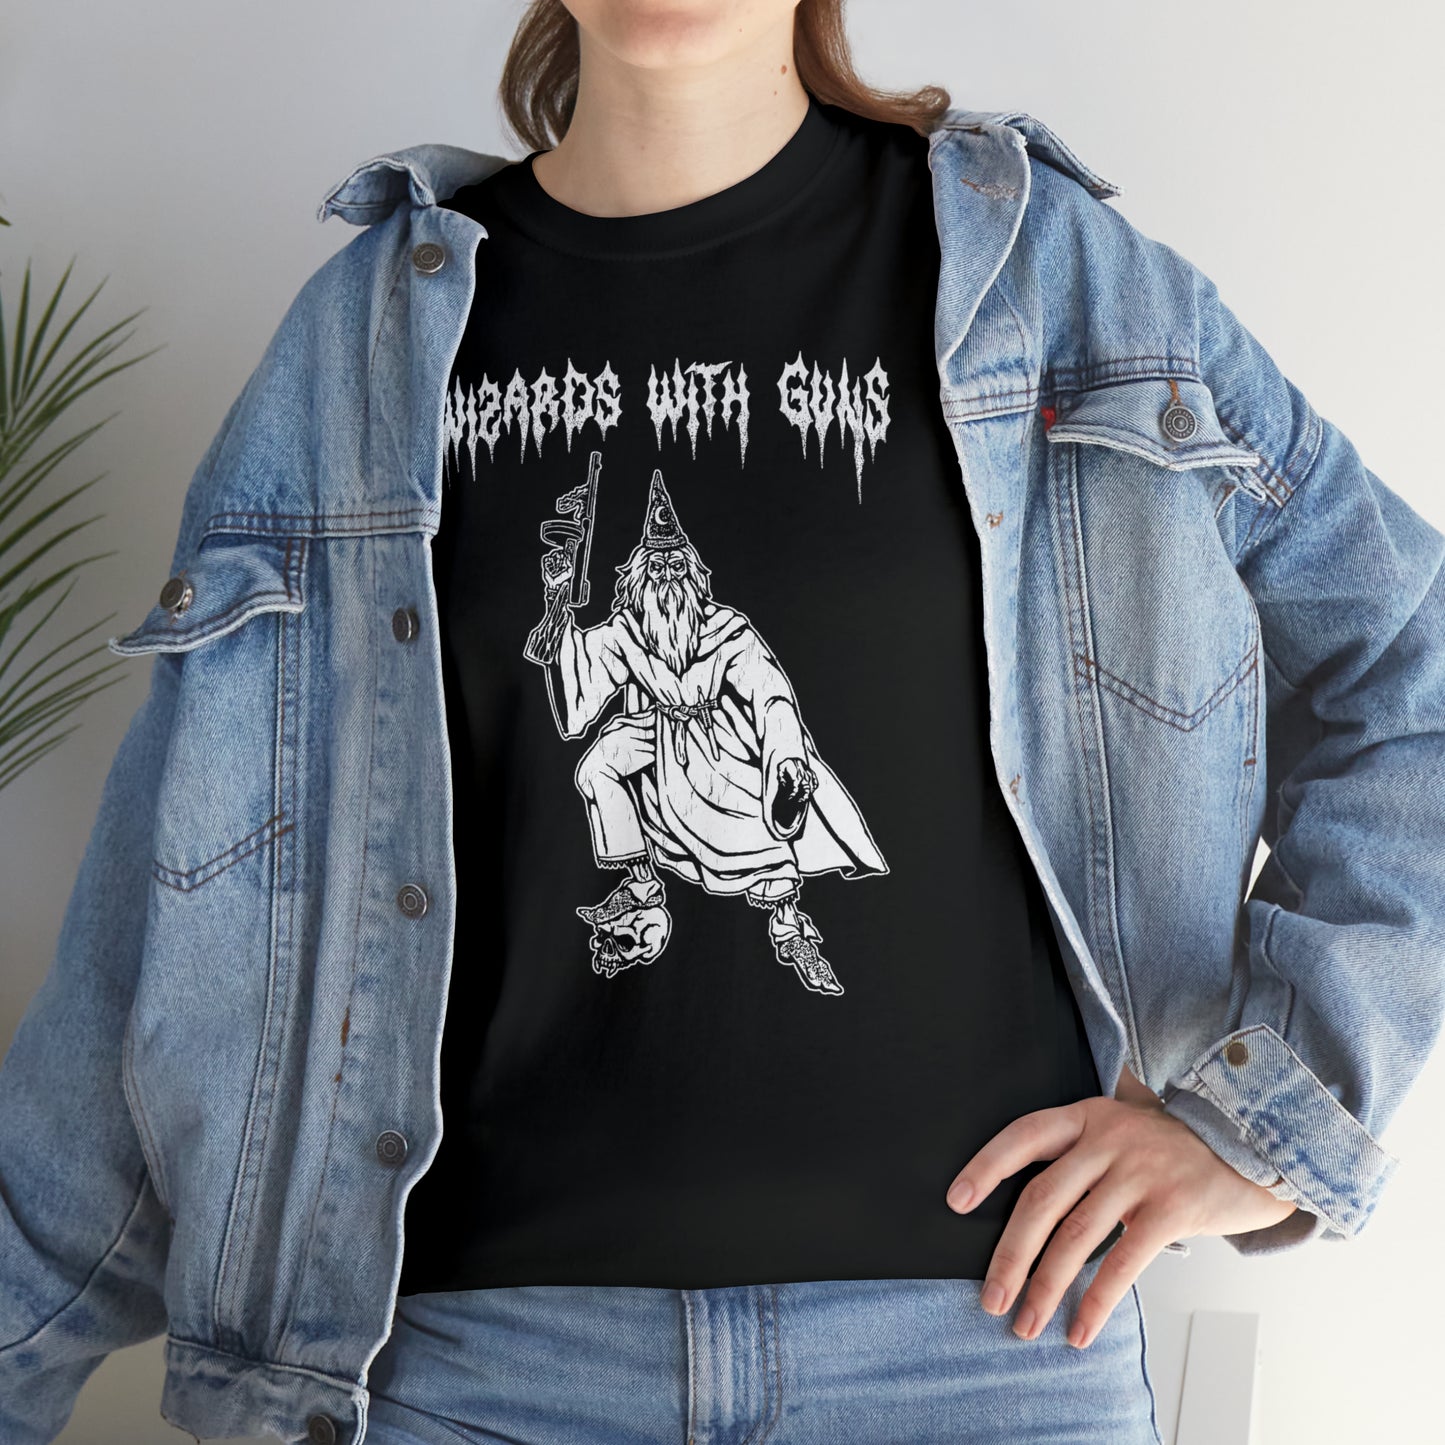 Wizard Tommy Gun T-Shirt